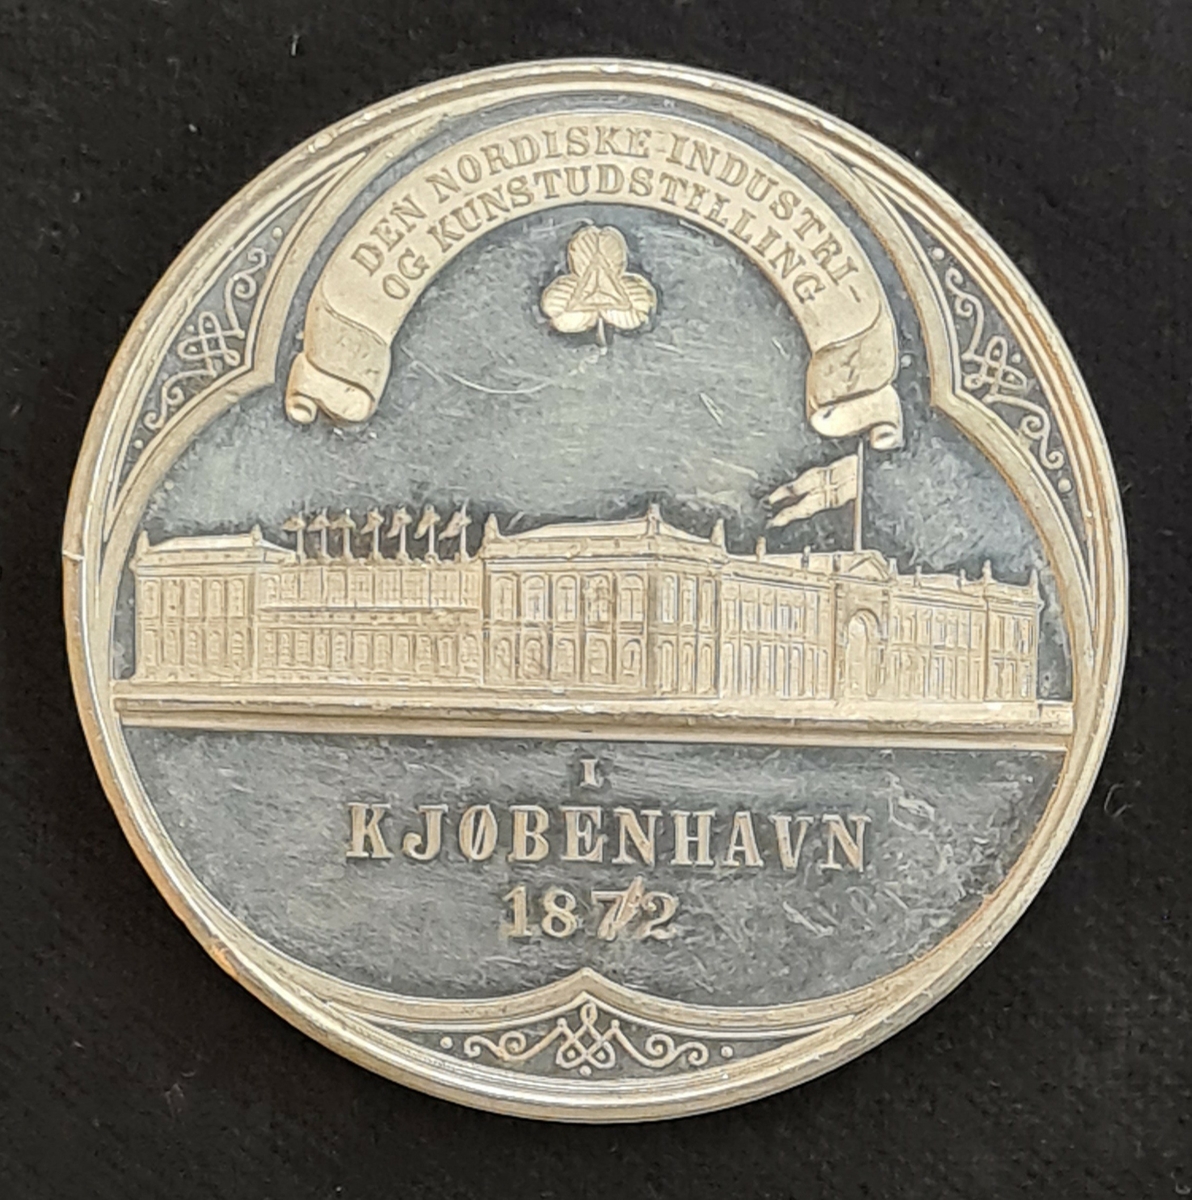 Medalj från Industri- och Konstutställningen i Köpenhamn år 1872.
Utställningen kallades även den Skandinaviska eller Nordiska utställningen.